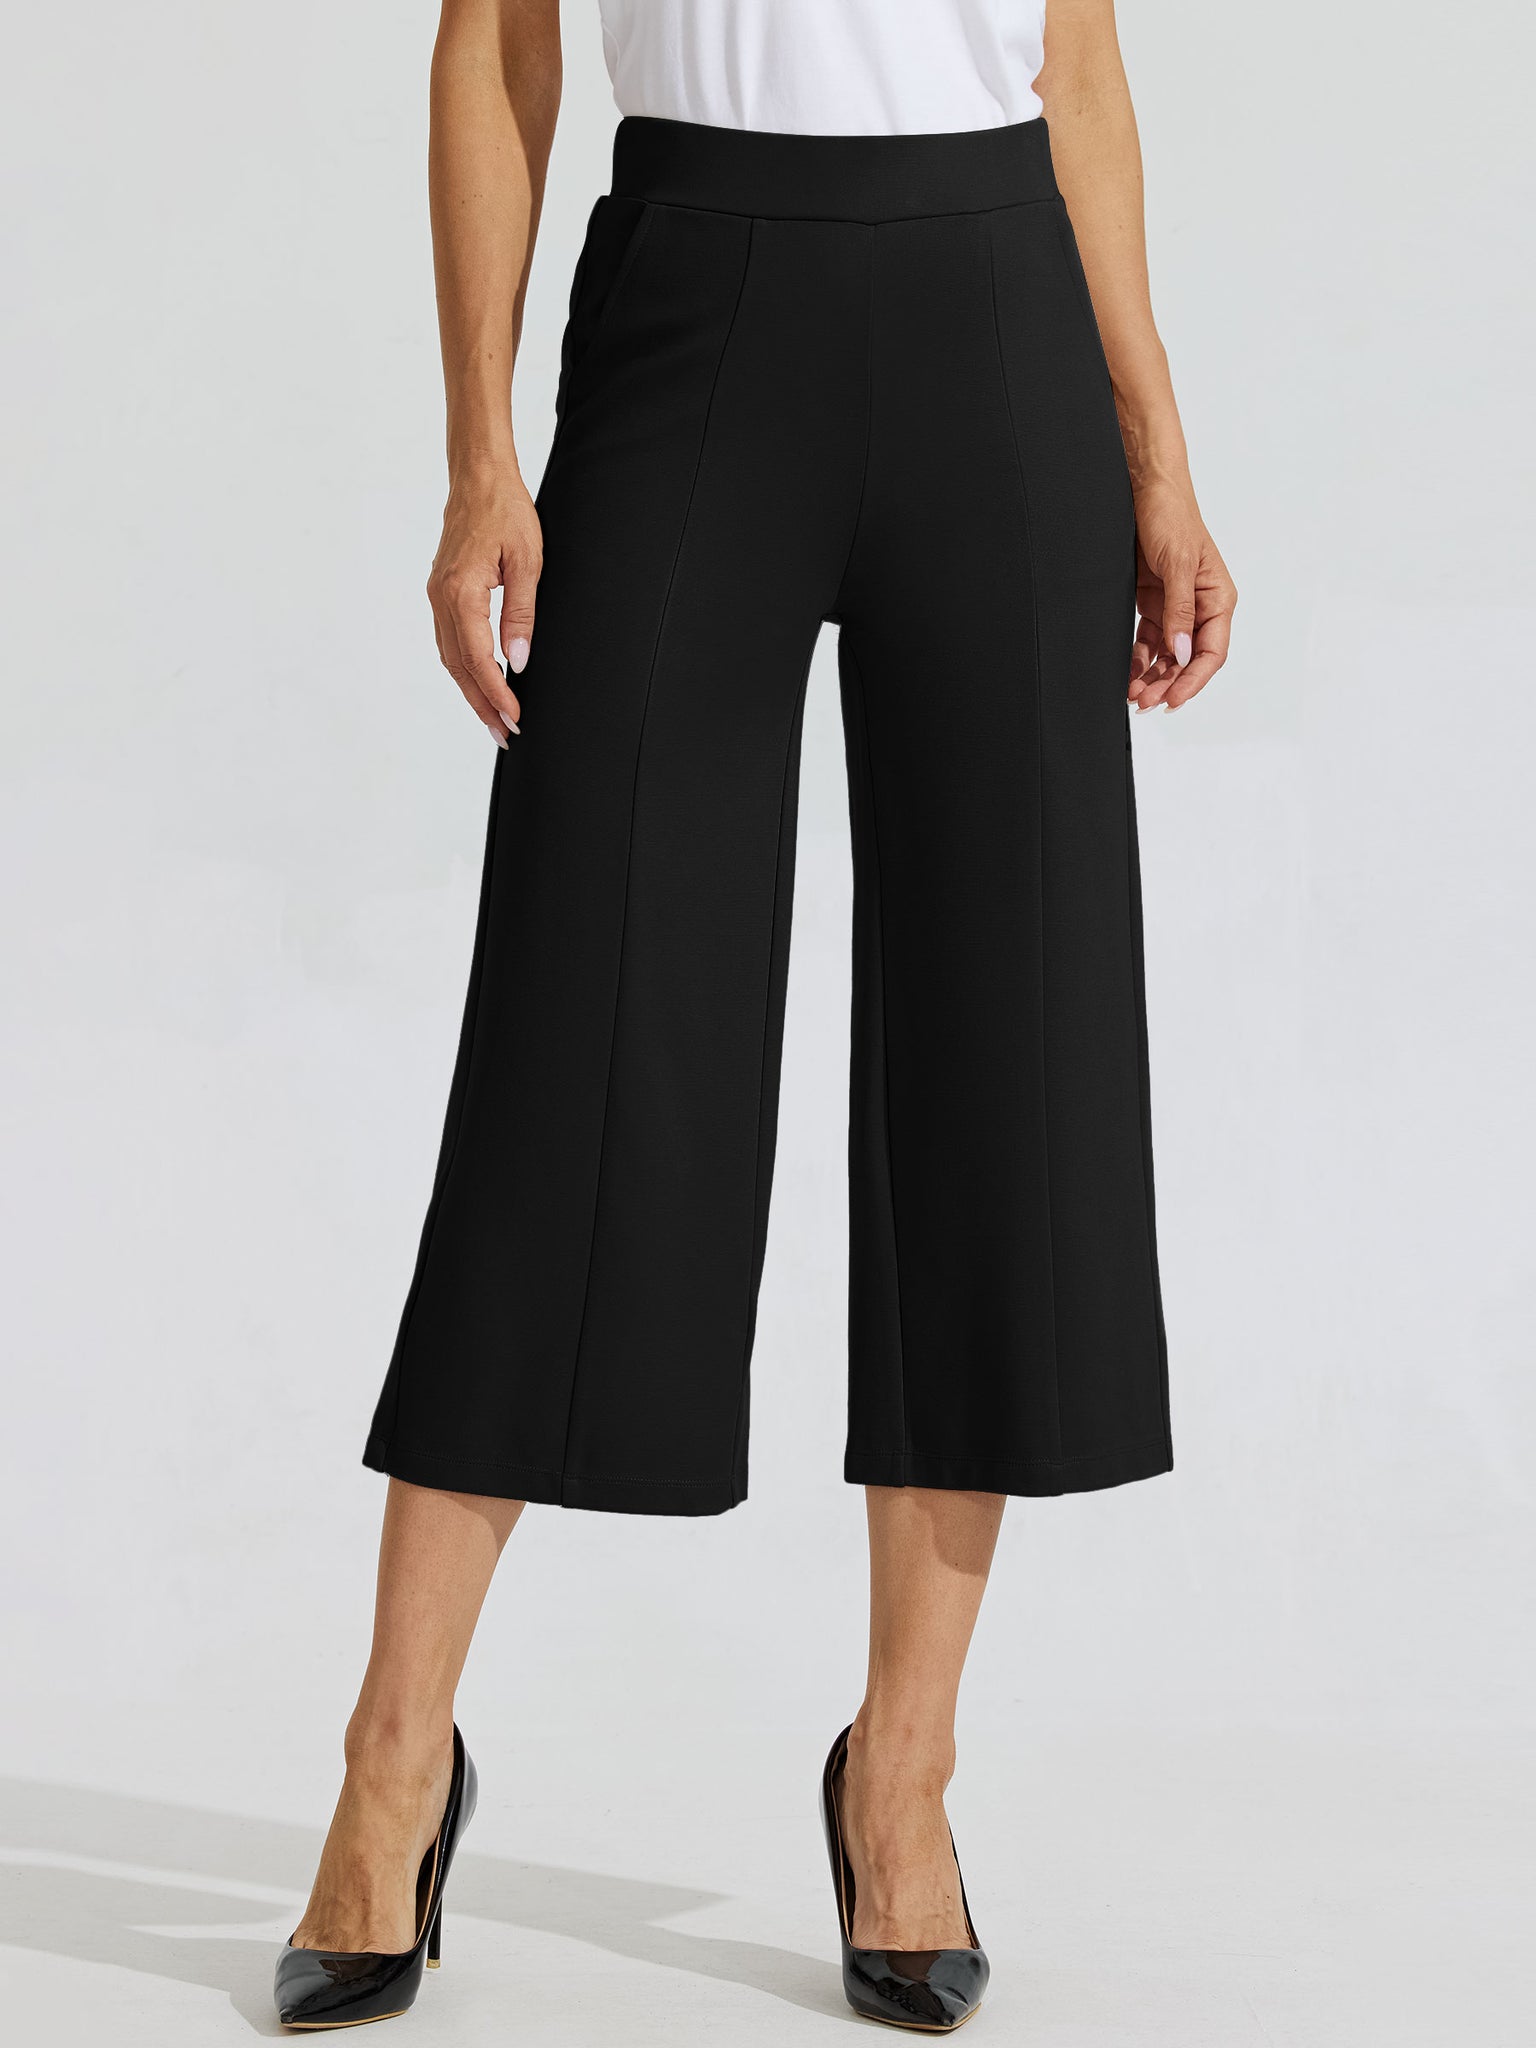 Women's Stretch Capri Wide-Leg Dress Pants_Black_model1